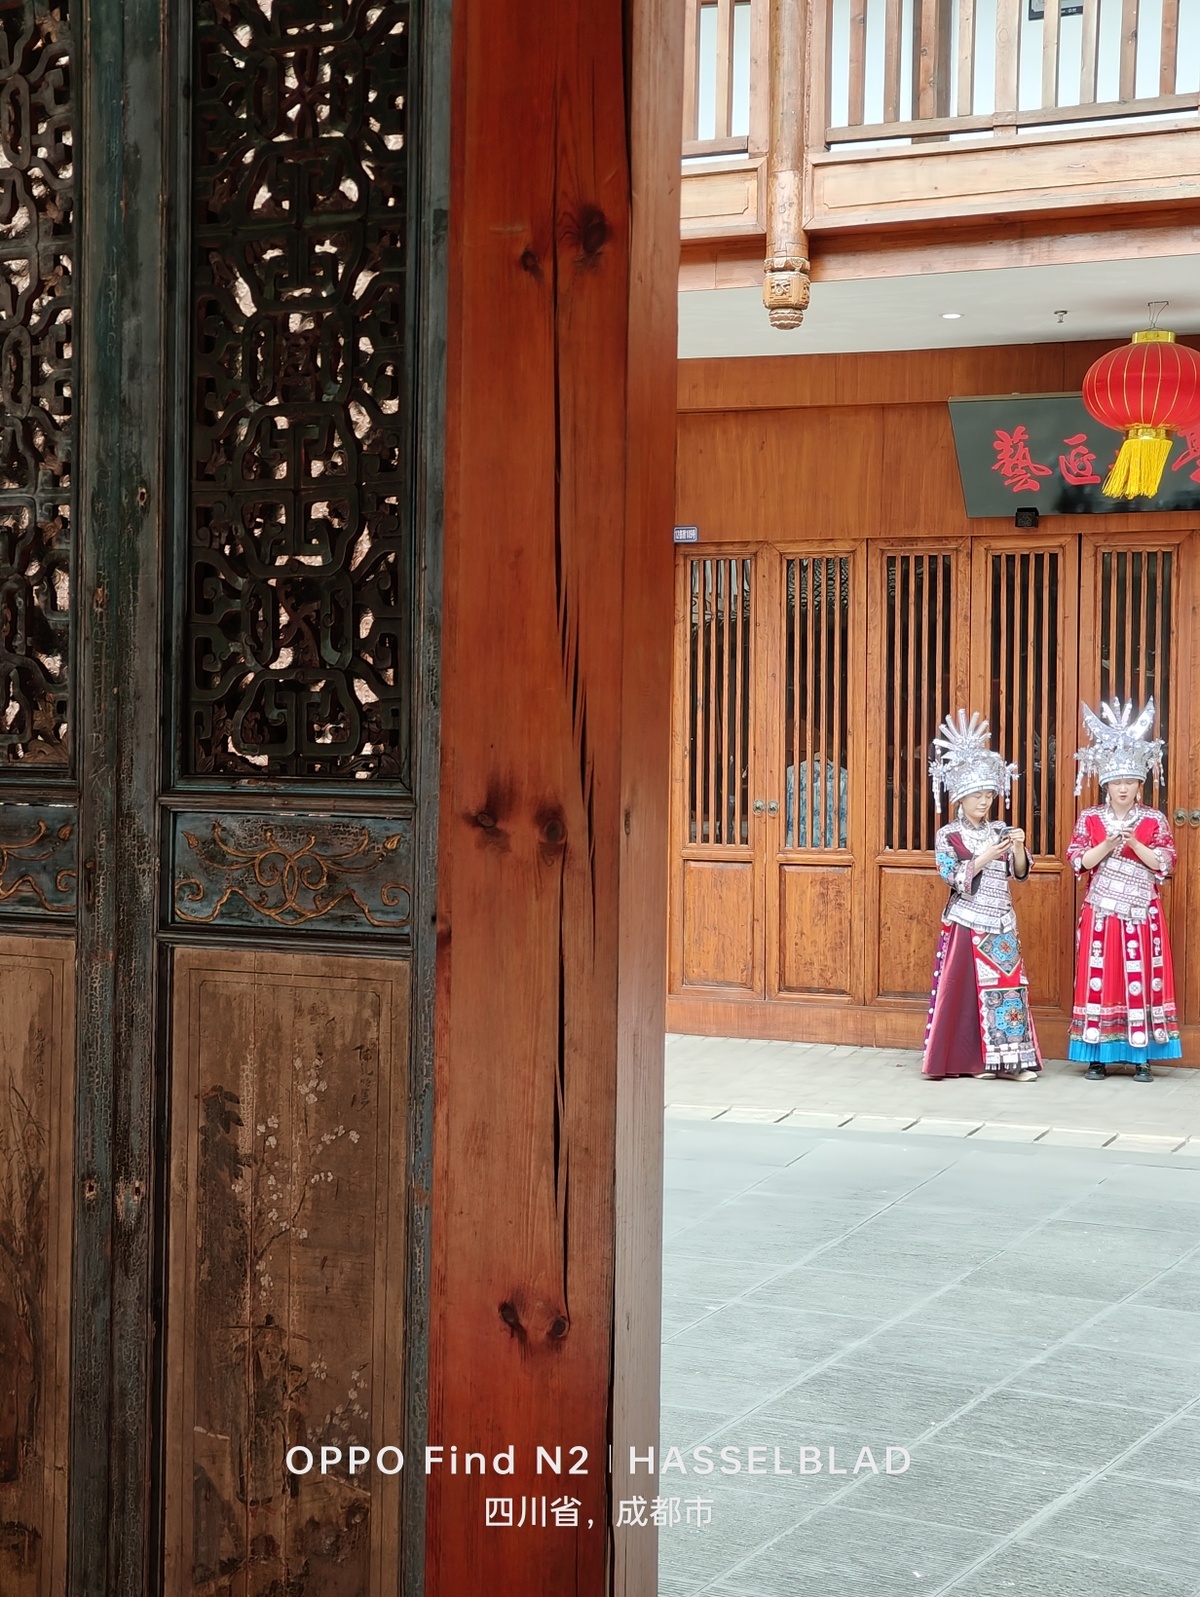 一些穿着传统服装的女性站在一扇木门前面